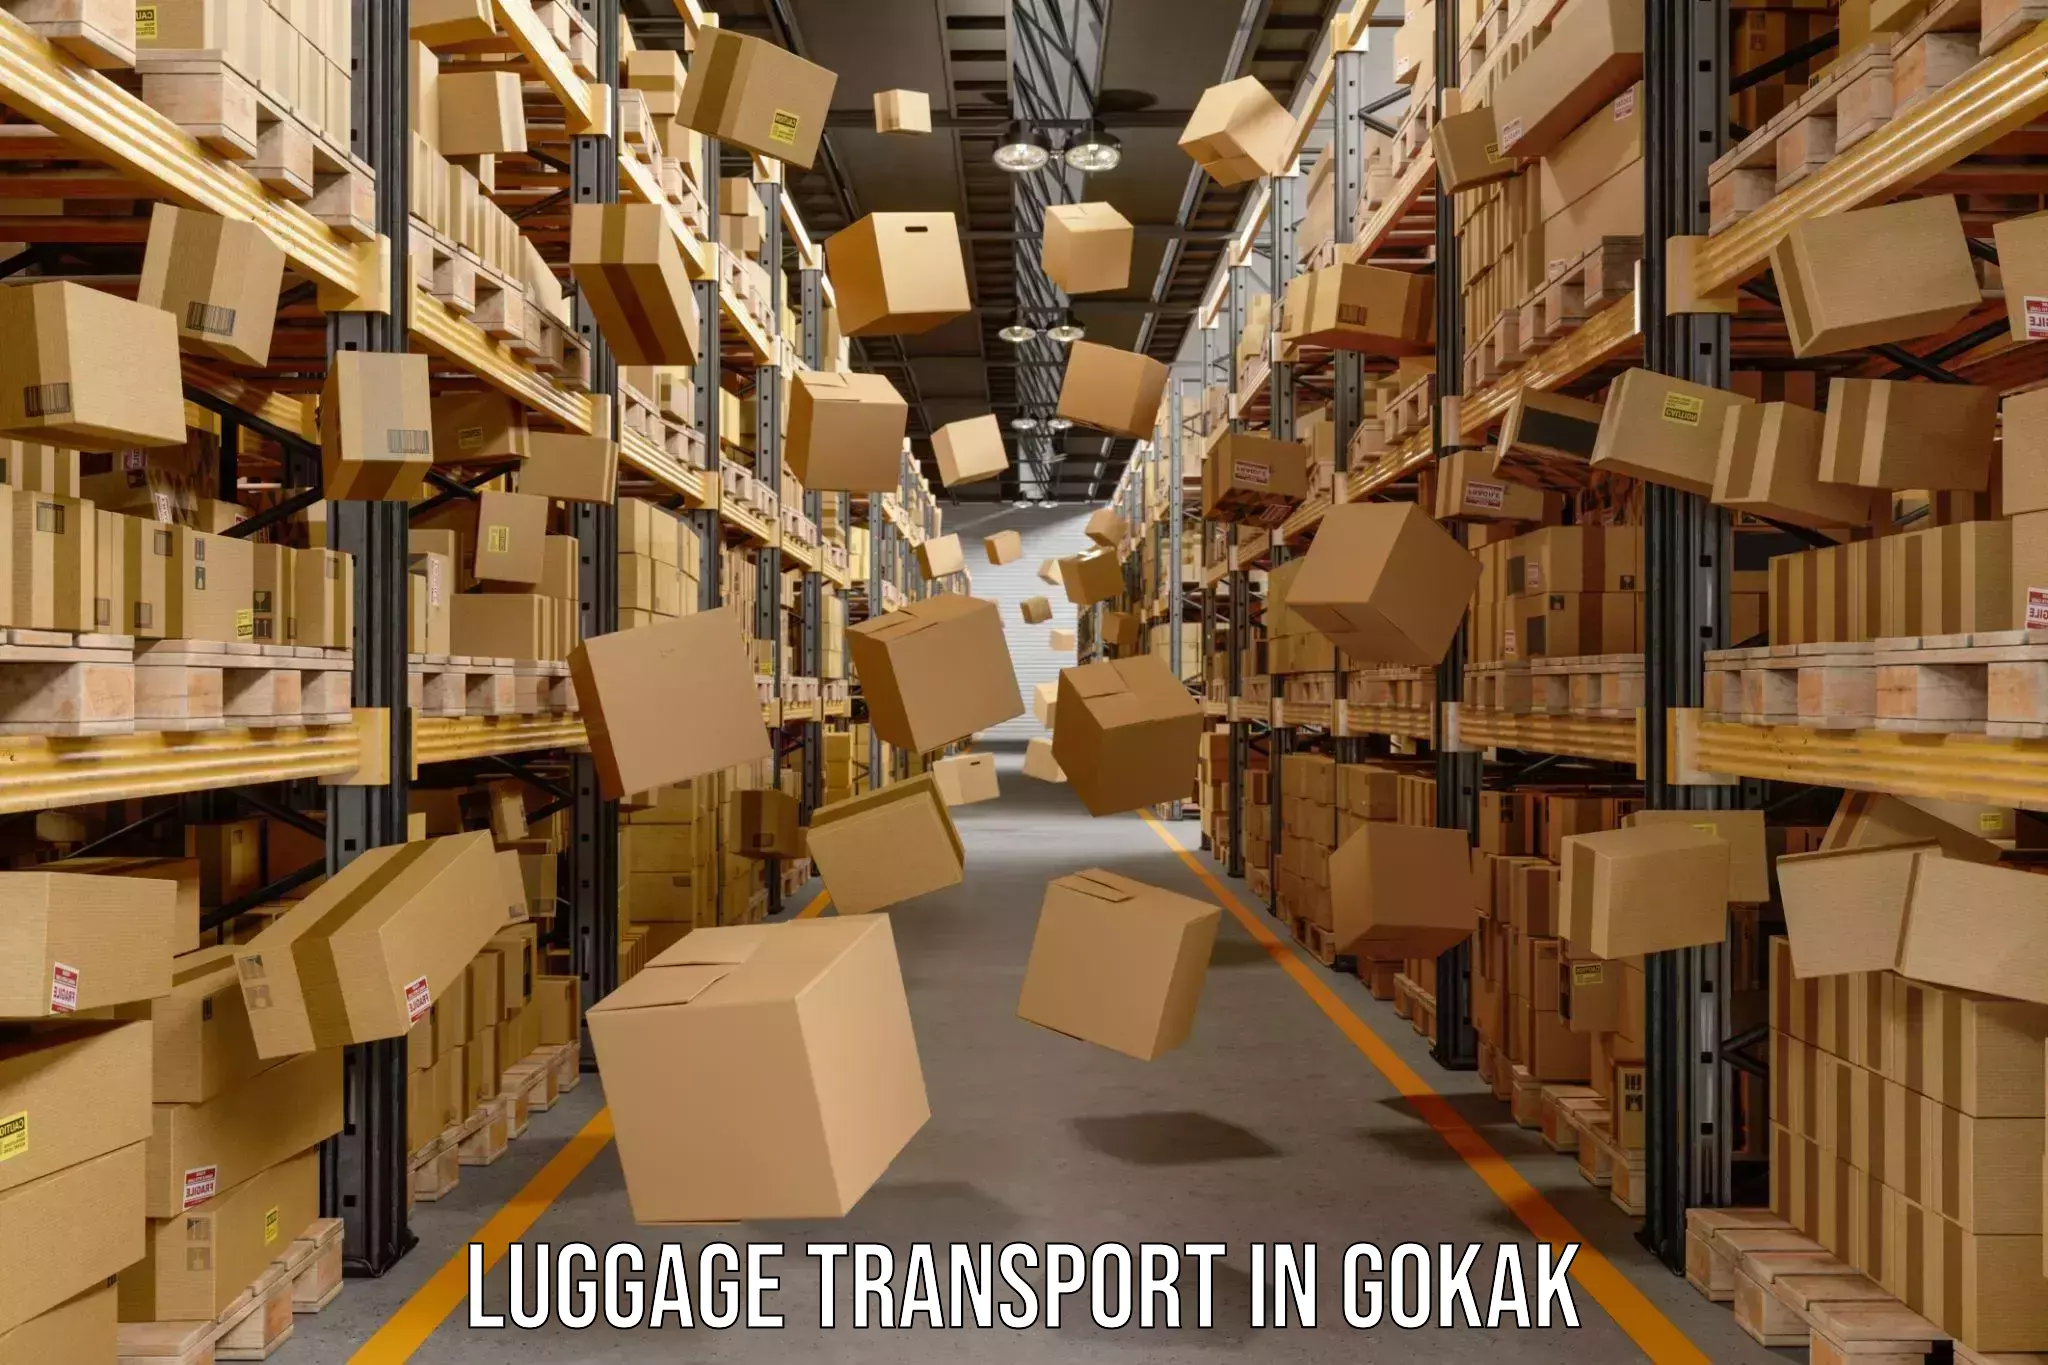 Luggage transport pricing in Gokak